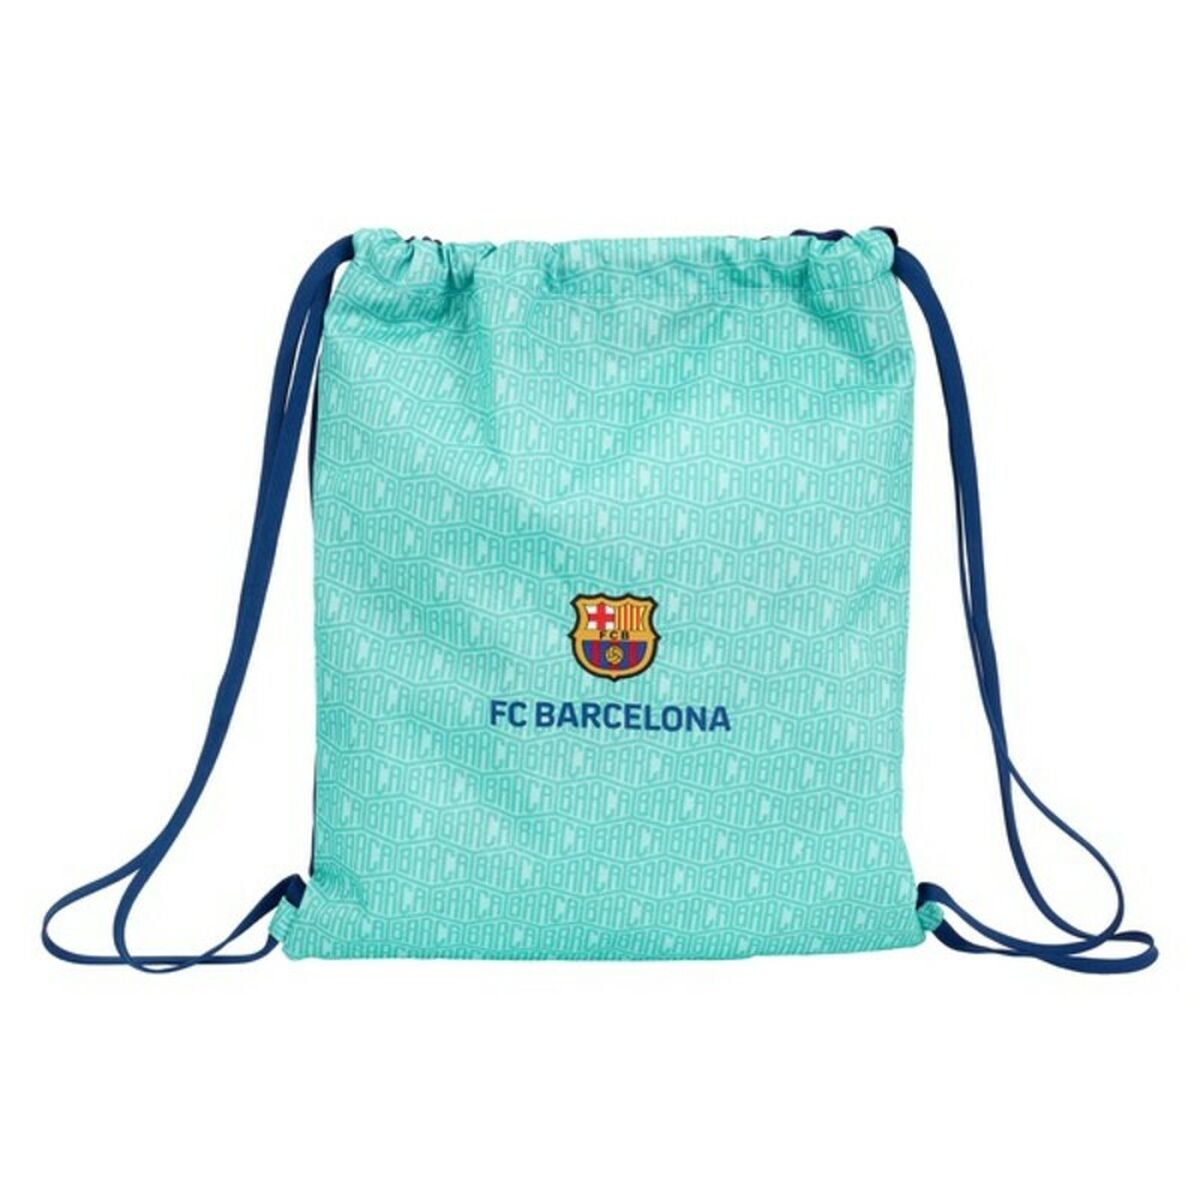 Geantă Rucsac cu Bretele F.C. Barcelona Turquoise